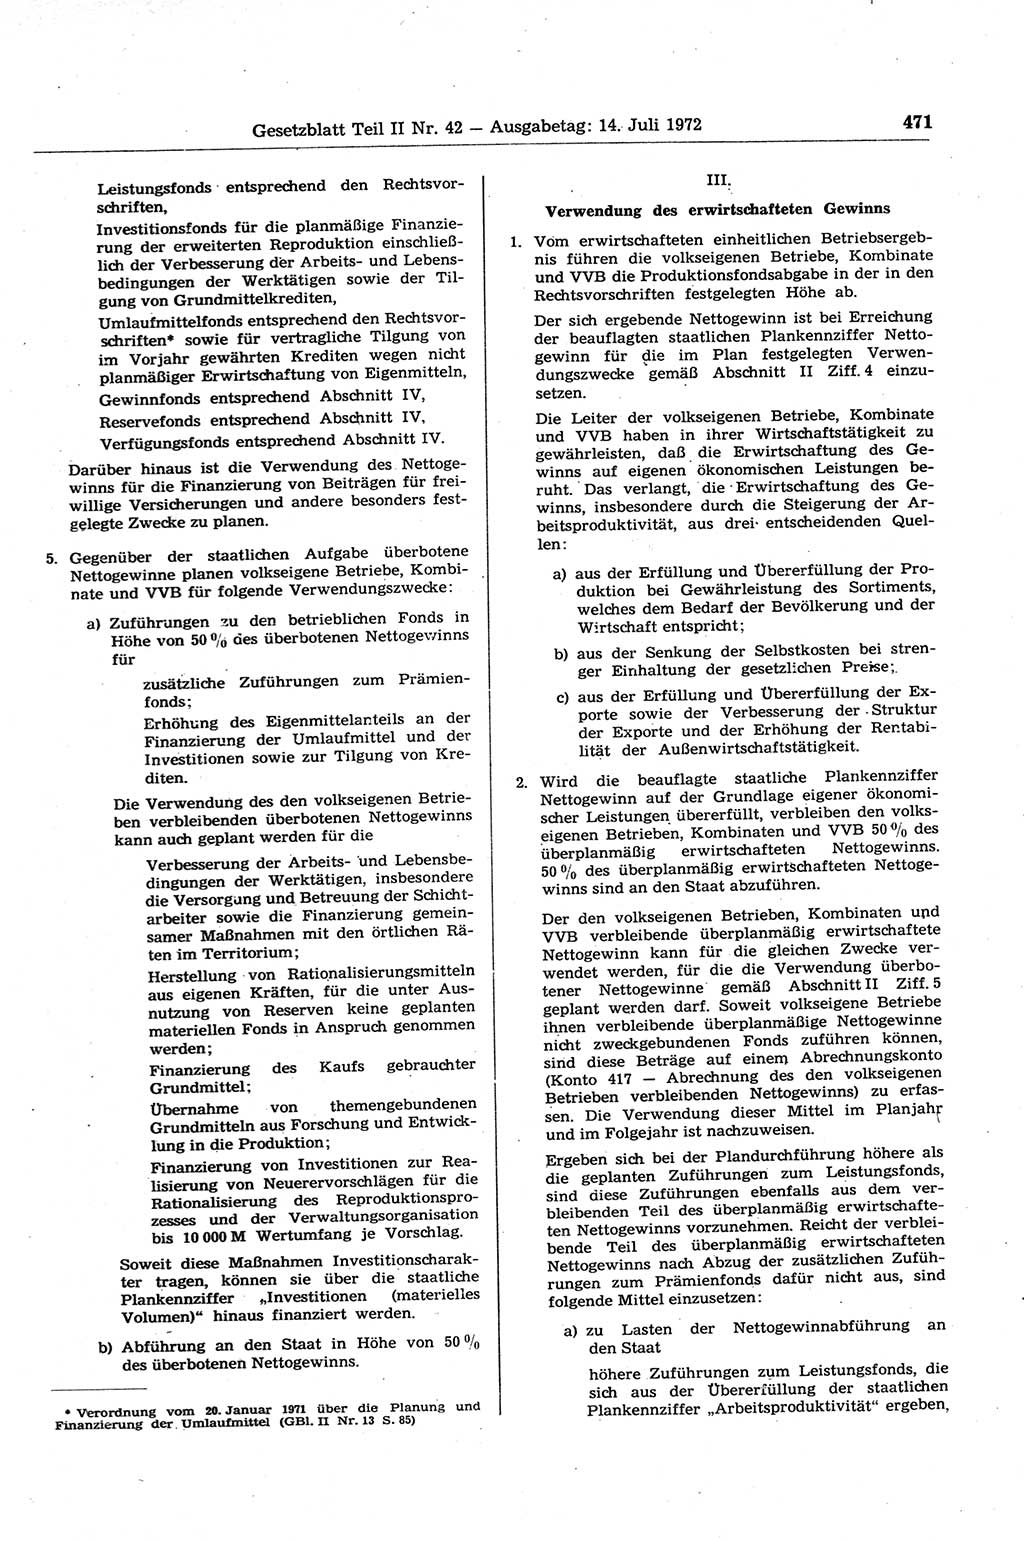 Gesetzblatt (GBl.) der Deutschen Demokratischen Republik (DDR) Teil ⅠⅠ 1972, Seite 471 (GBl. DDR ⅠⅠ 1972, S. 471)